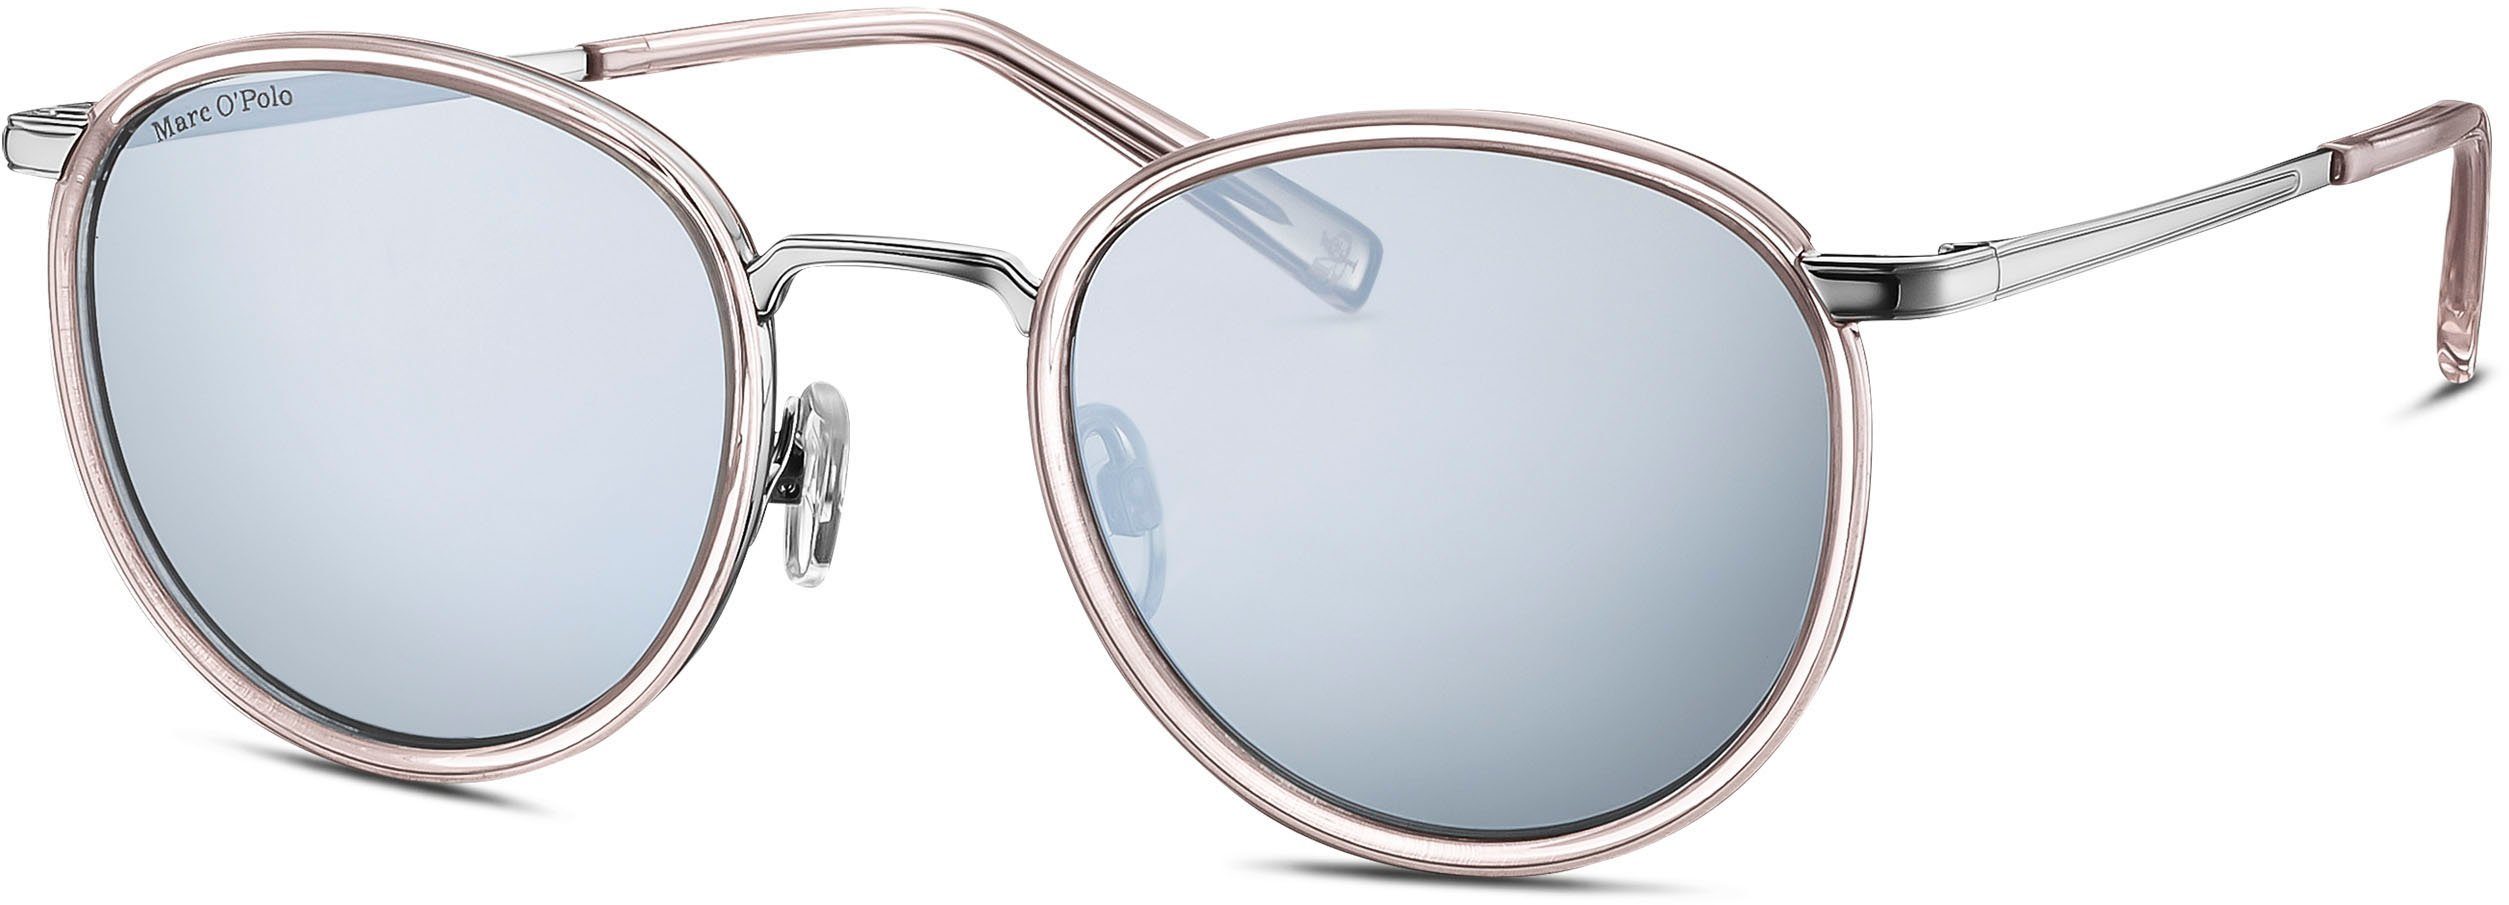 Online-Verkauf von Neuware Marc O'Polo Sonnenbrille Modell 505105 Panto-Form hellbraun